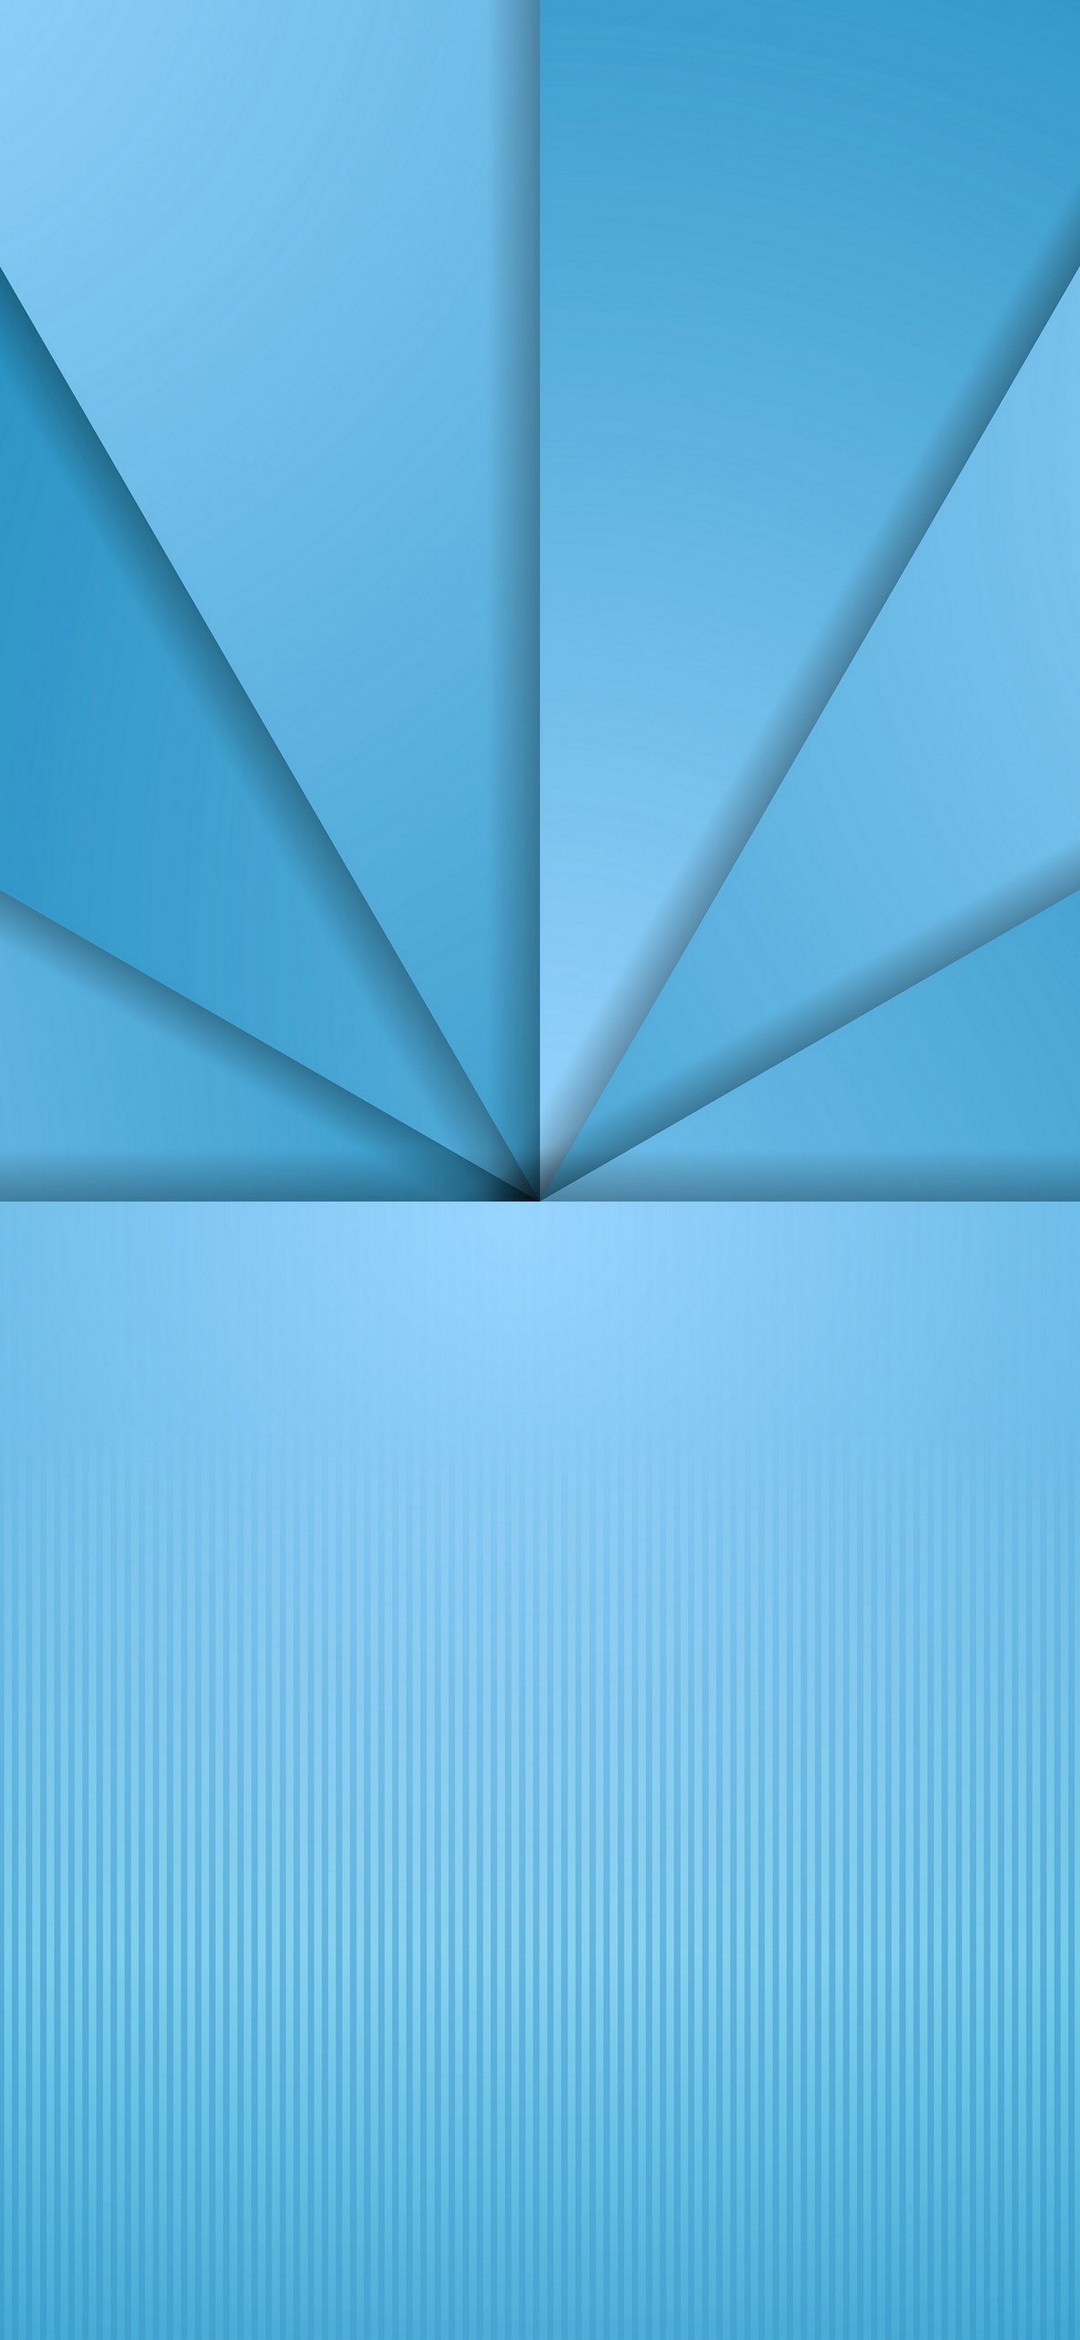 青い三角と縦線 Google Pixel 4a Android スマホ壁紙 待ち受け スマラン